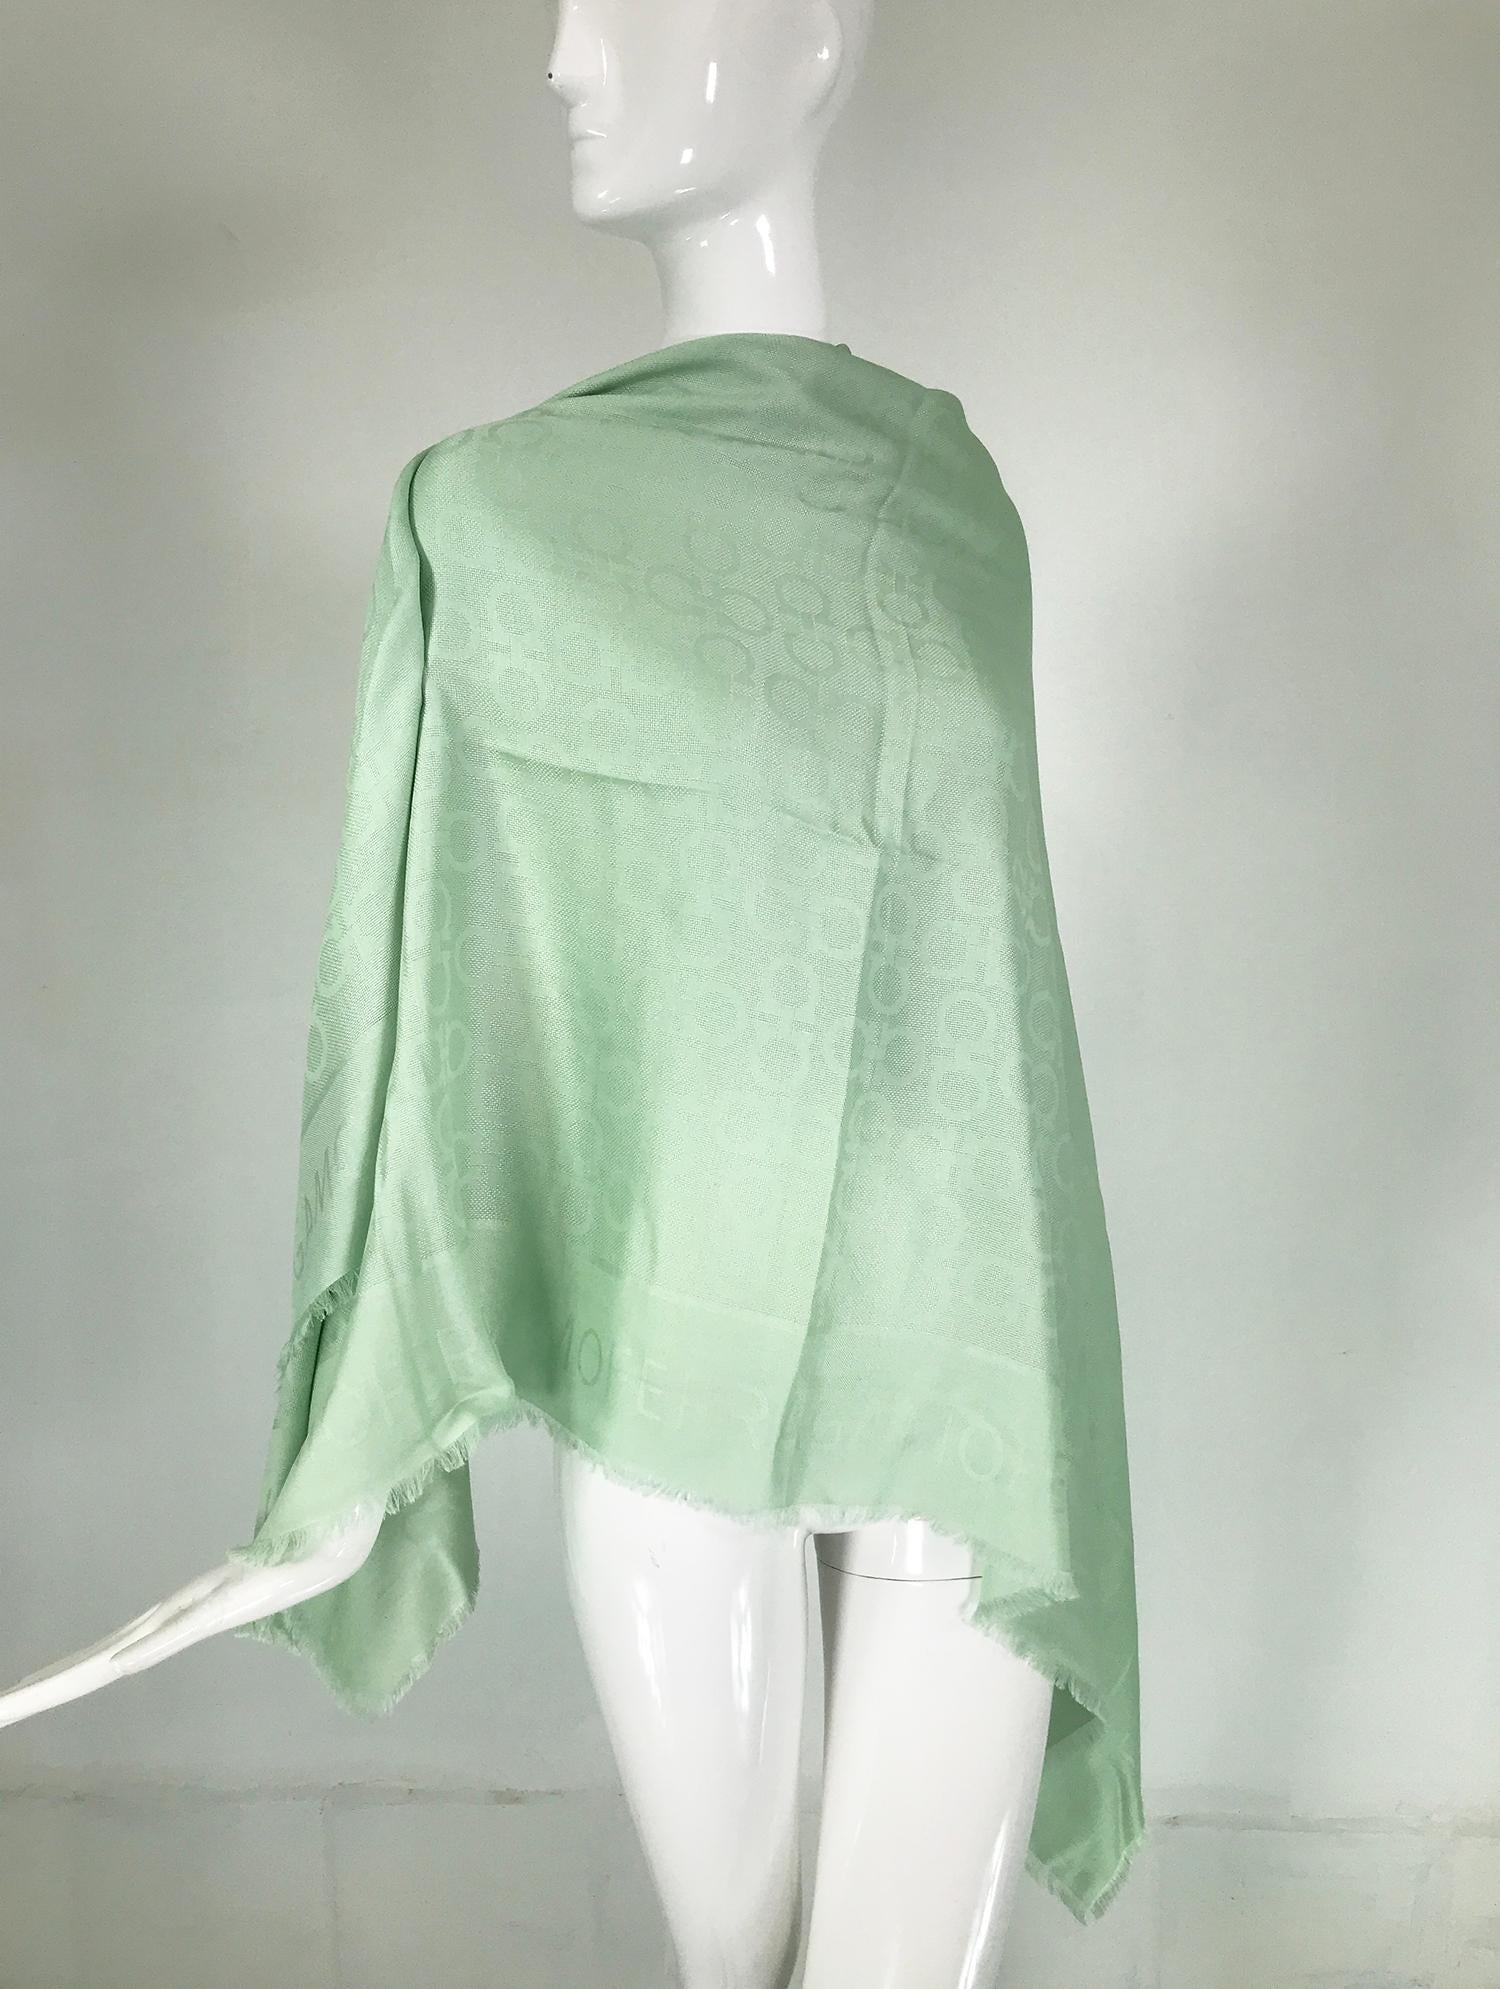 Châle en jacquard de soie et de laine vert menthe Salvatore Ferragamo avec franges. Un magnifique châle avec un logo Ferragamo tissé en jacquard.